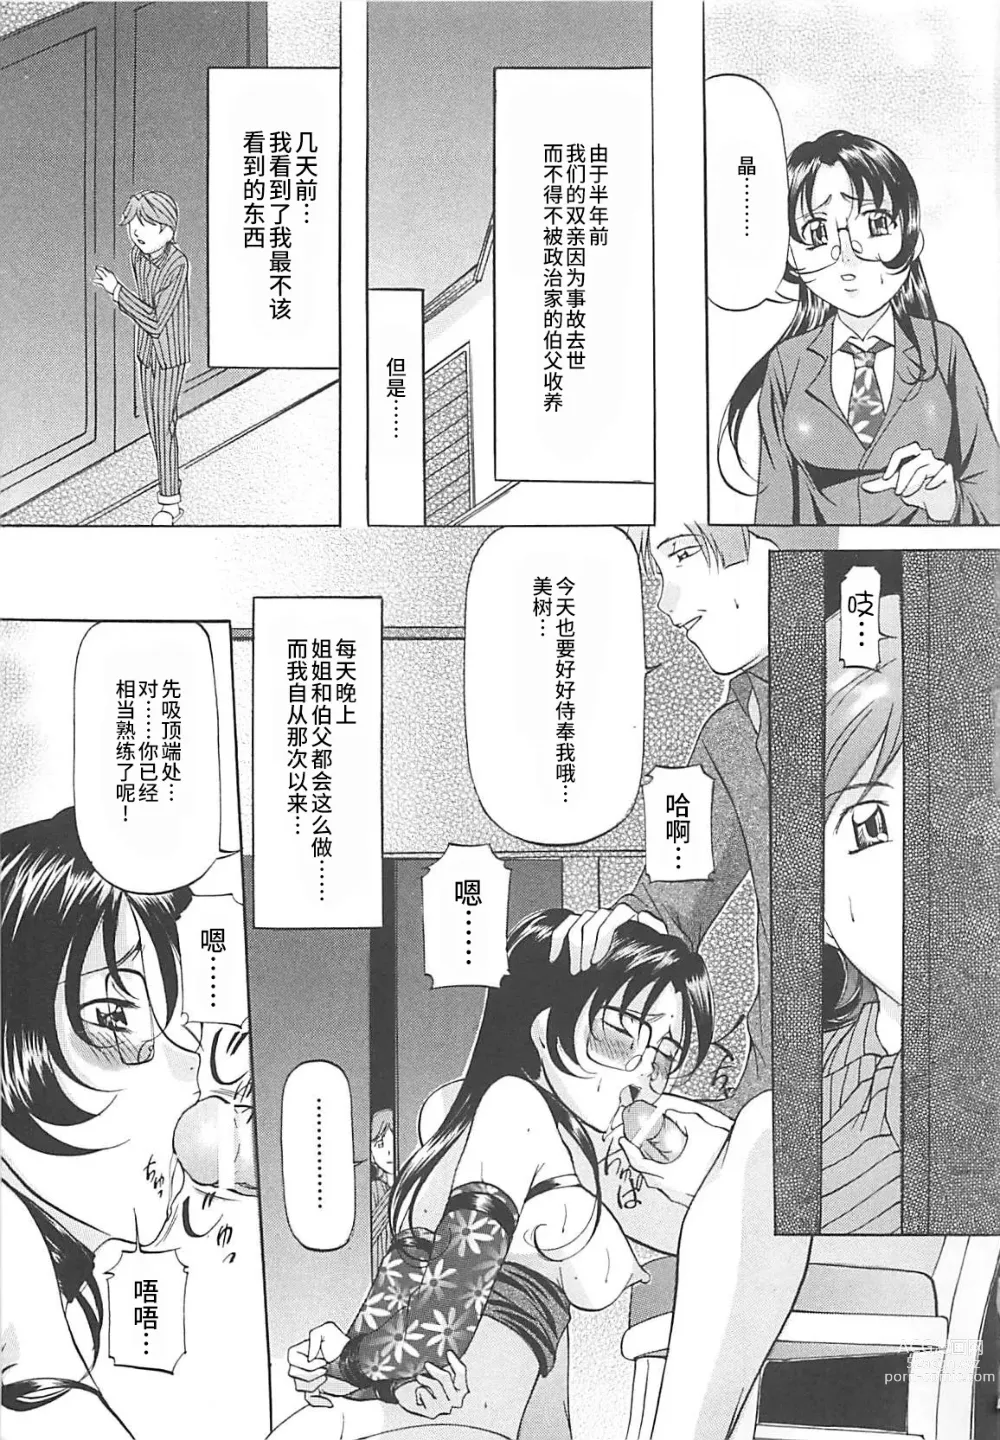 Page 152 of manga SM Koiuta